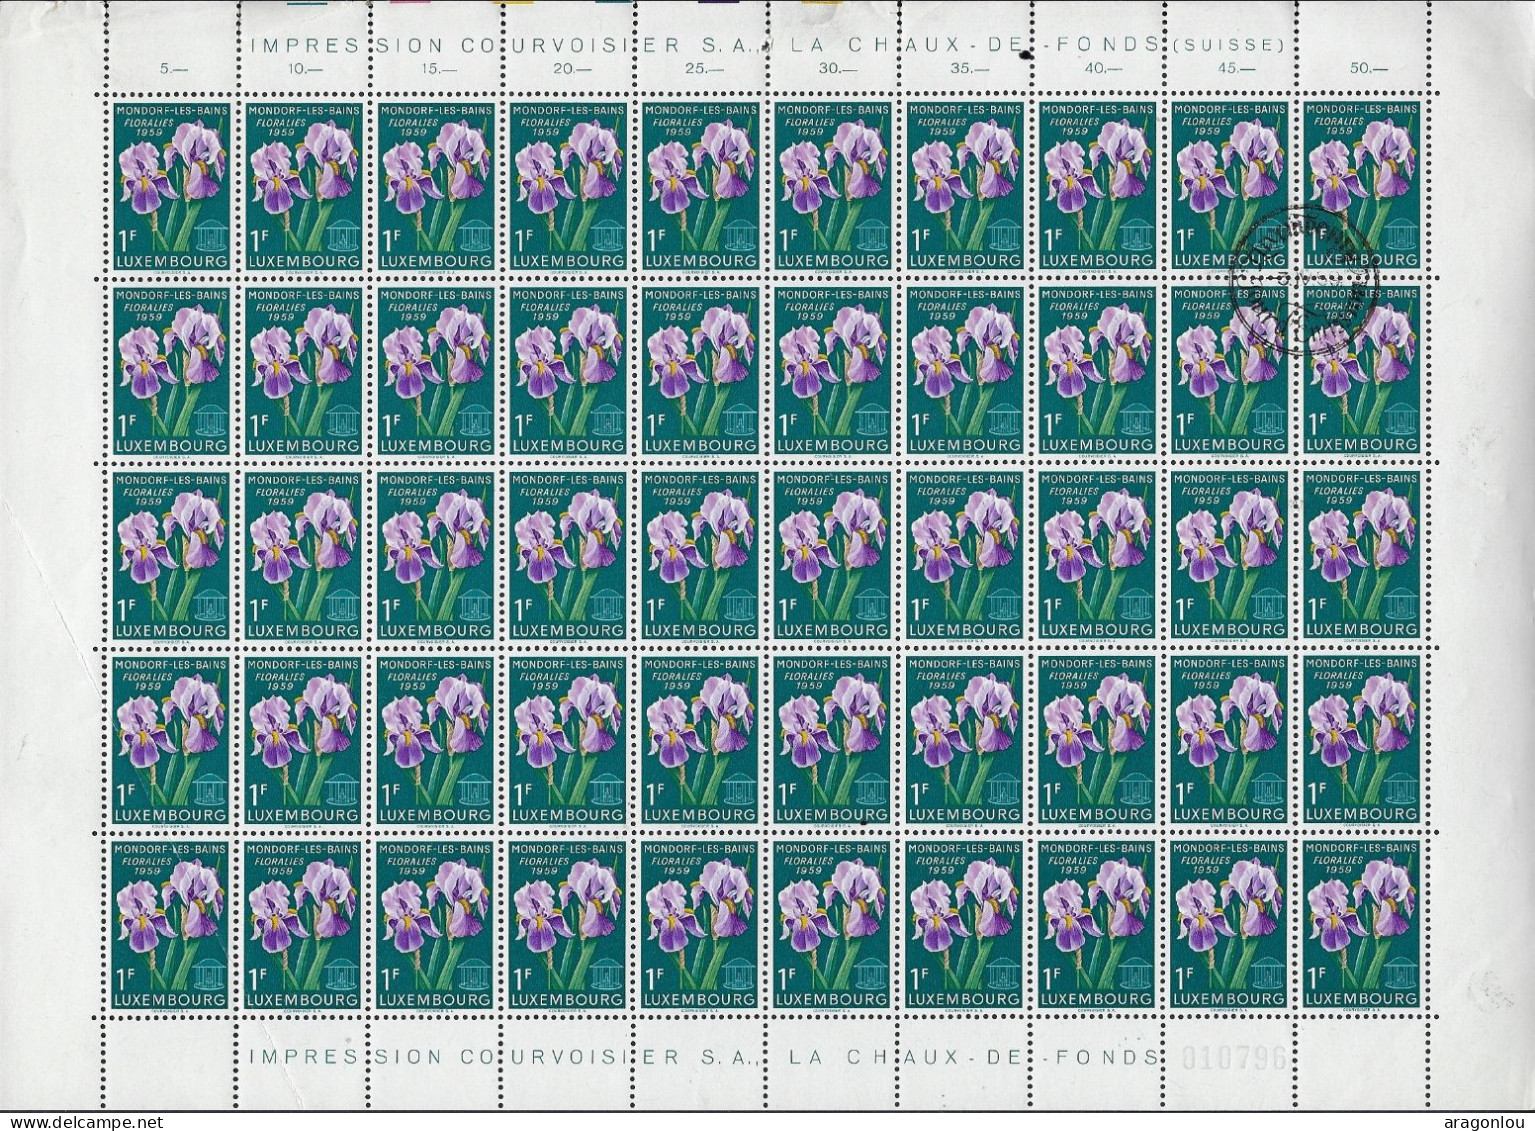 Luxembourg - Luxemburg -  Feuille à 100 Timbres 1Fr   Mondorf-les-Bains  Floralies   1959 - Feuilles Complètes